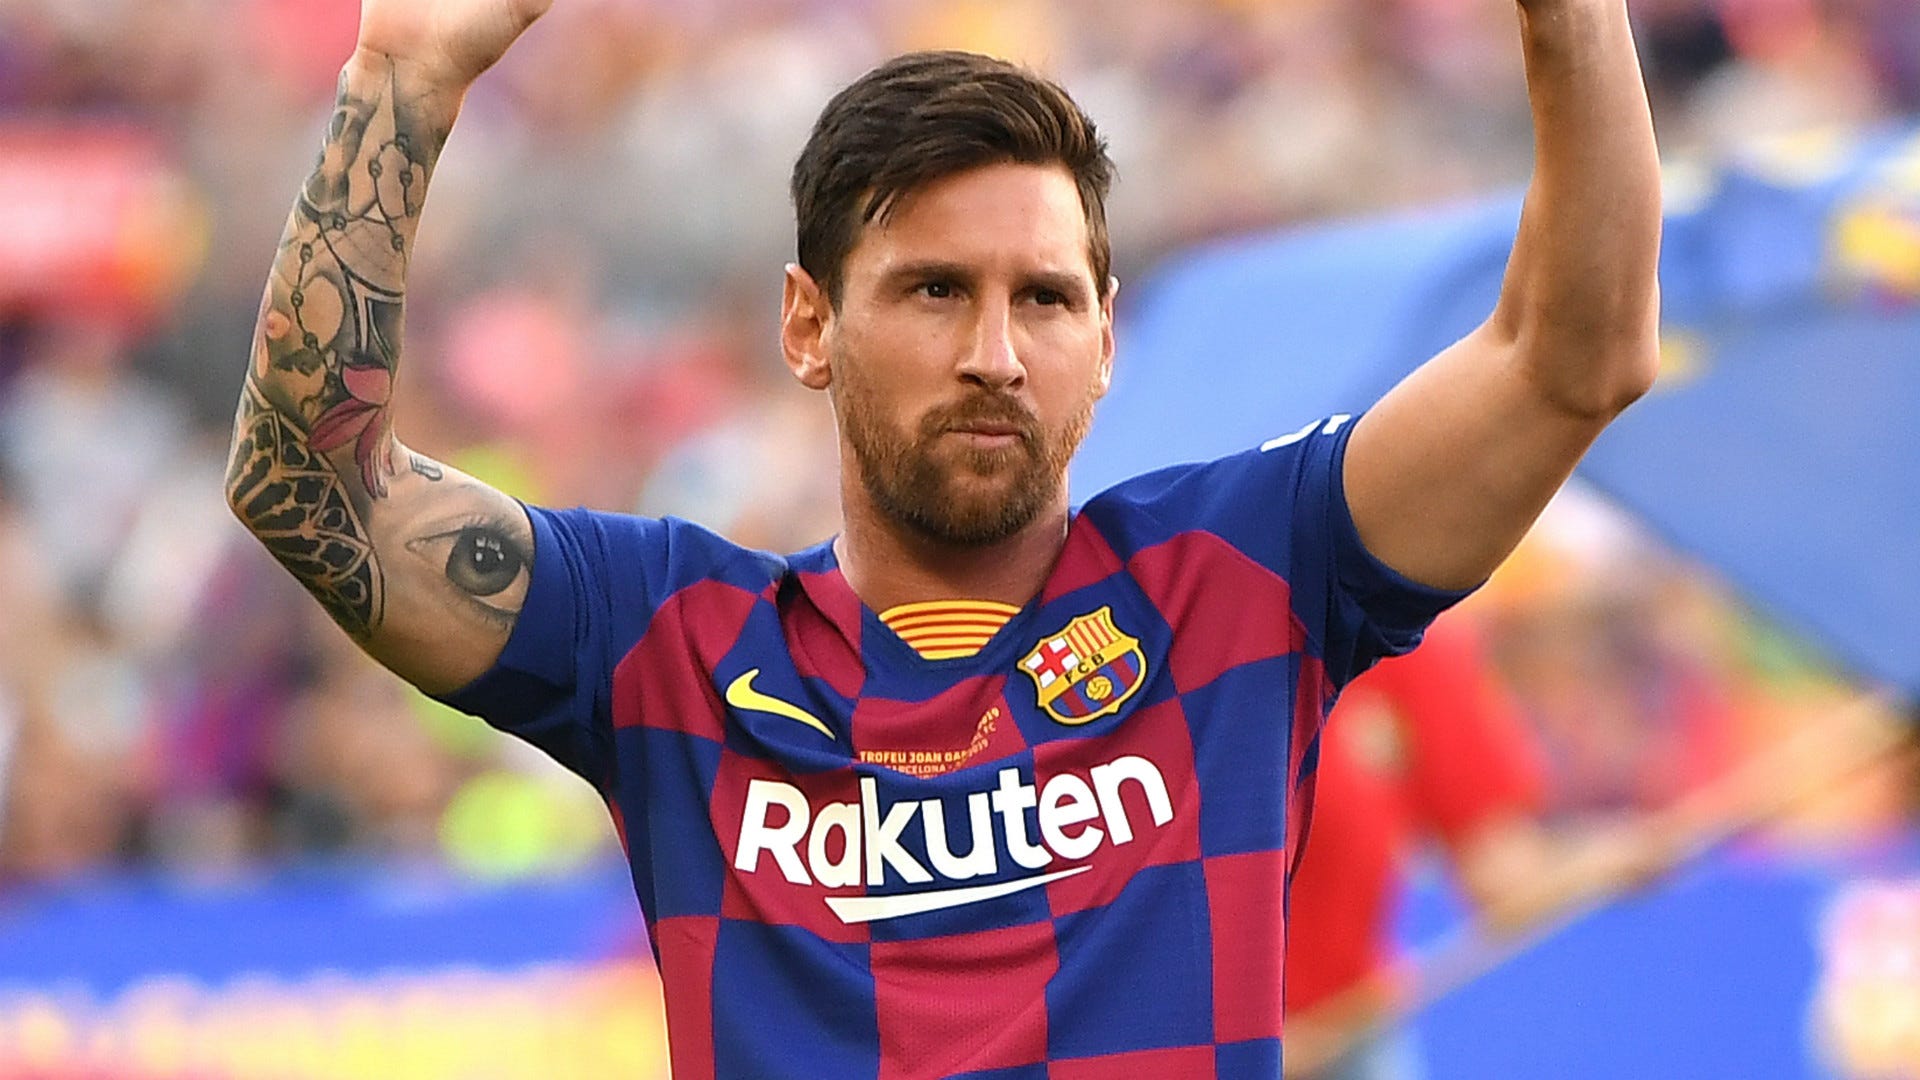 Hợp đồng trọn đời Messi Barcelona là một trong những cột mốc trong sự nghiệp của anh. Với hợp đồng này, bạn sẽ có cơ hội nhìn lại những thành tựu lớn của Messi và đồng đội trong chiếc áo xanhgrana. Hãy cùng nhau tận hưởng và vui vẻ.